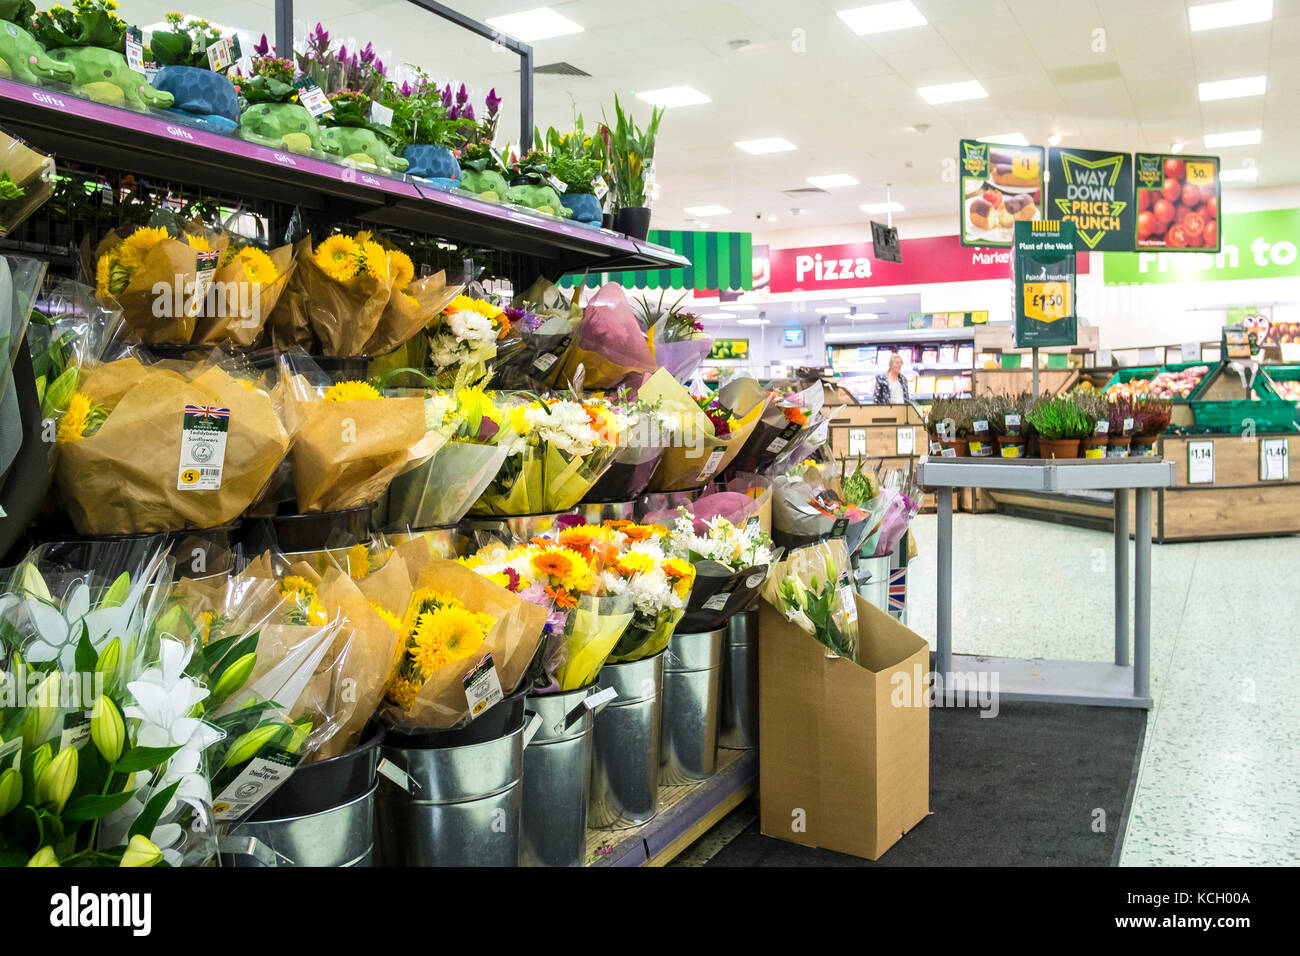 Shopping dans un supermarché - bouquets de fleurs sur l'affichage et pour la vente dans un supermarché Morrisons. Banque D'Images